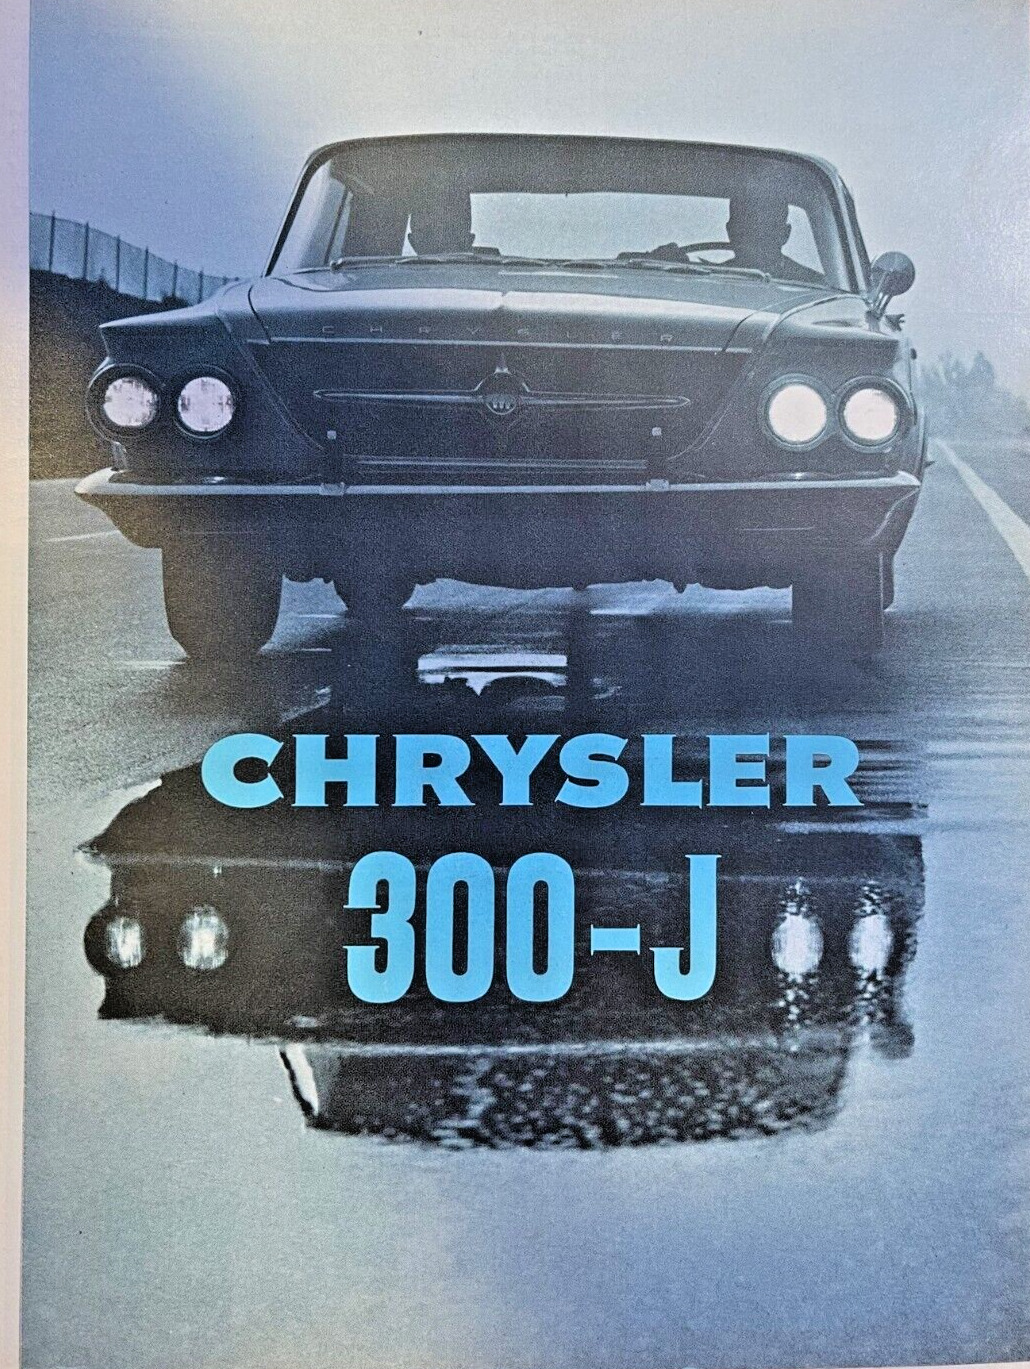 1963 Road Test Chrysler 300-J